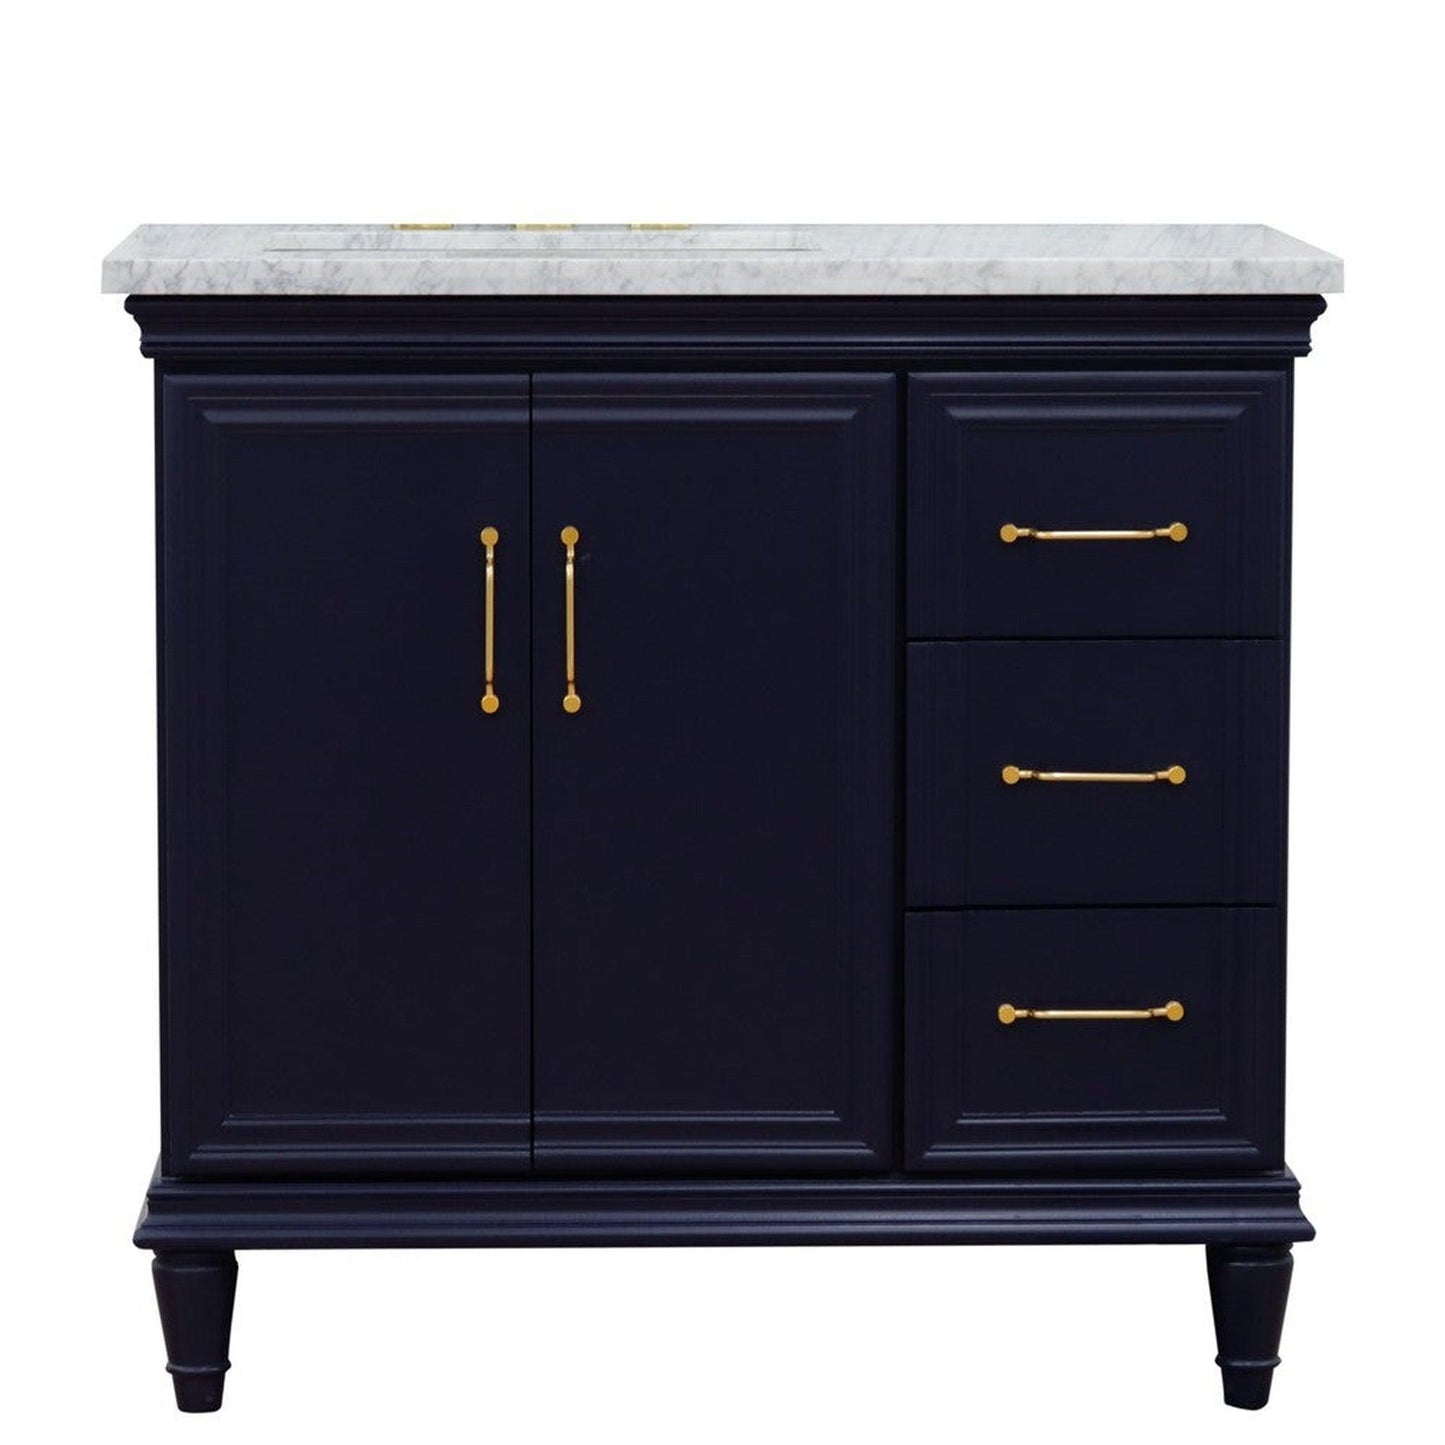 Bellaterra Home Forli 37" 2-Door 3-Drawer Blue Freestanding Vanity Set With Ceramic Left Offset Undermount Rectangular Sink and White Carrara Marble Top, and Left Door Cabinet